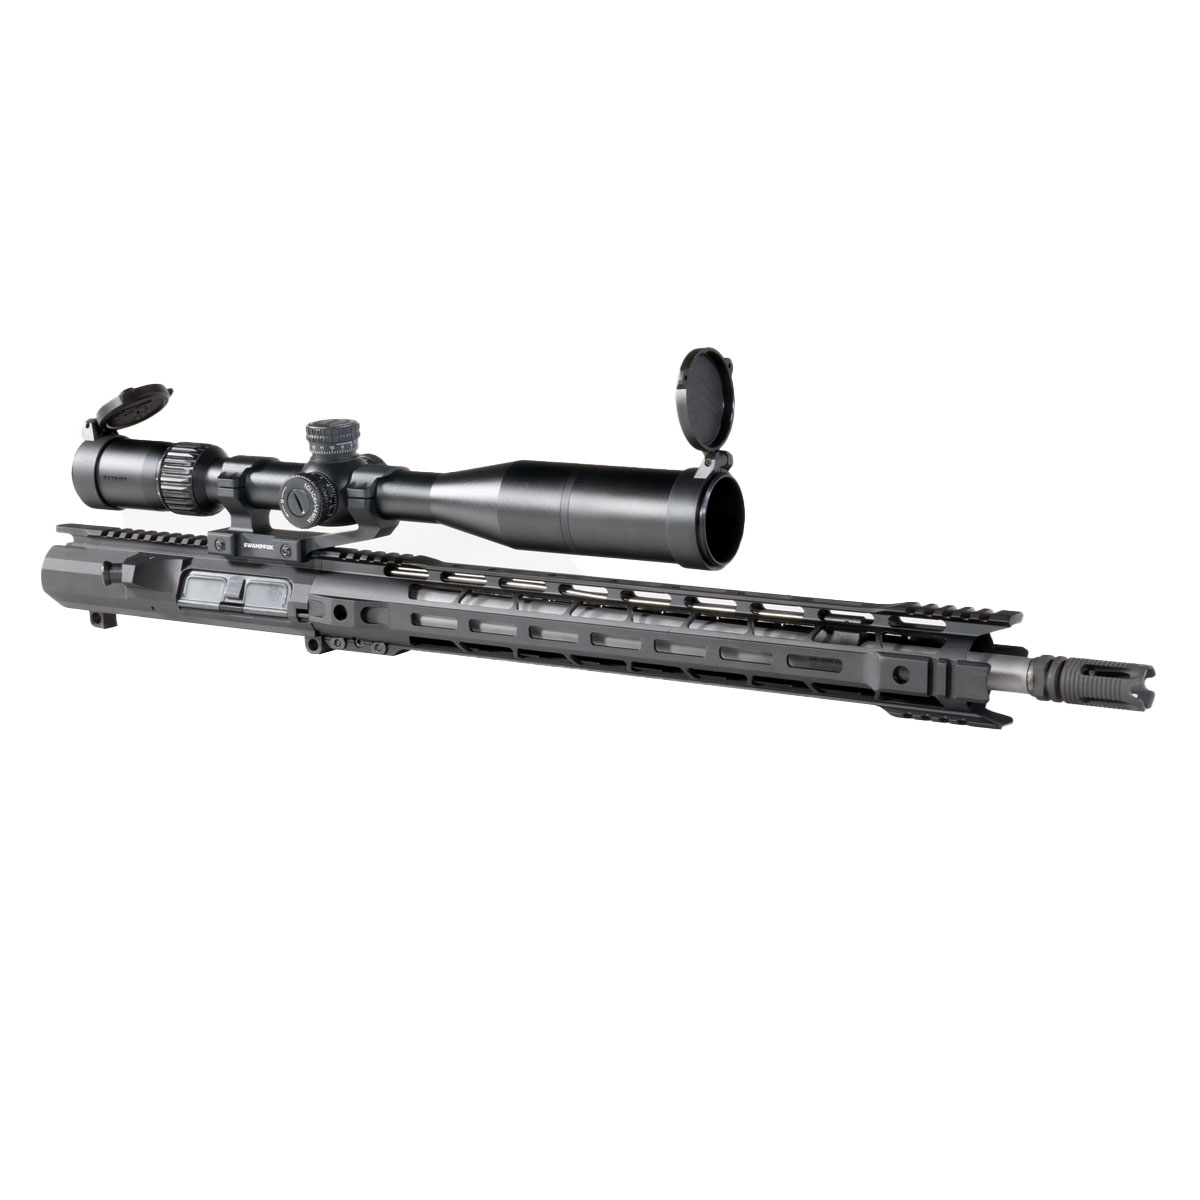 DTT 'Negotiator' 18-inch LR-308 .308 Win Stainless Rifle Upper Build Kit